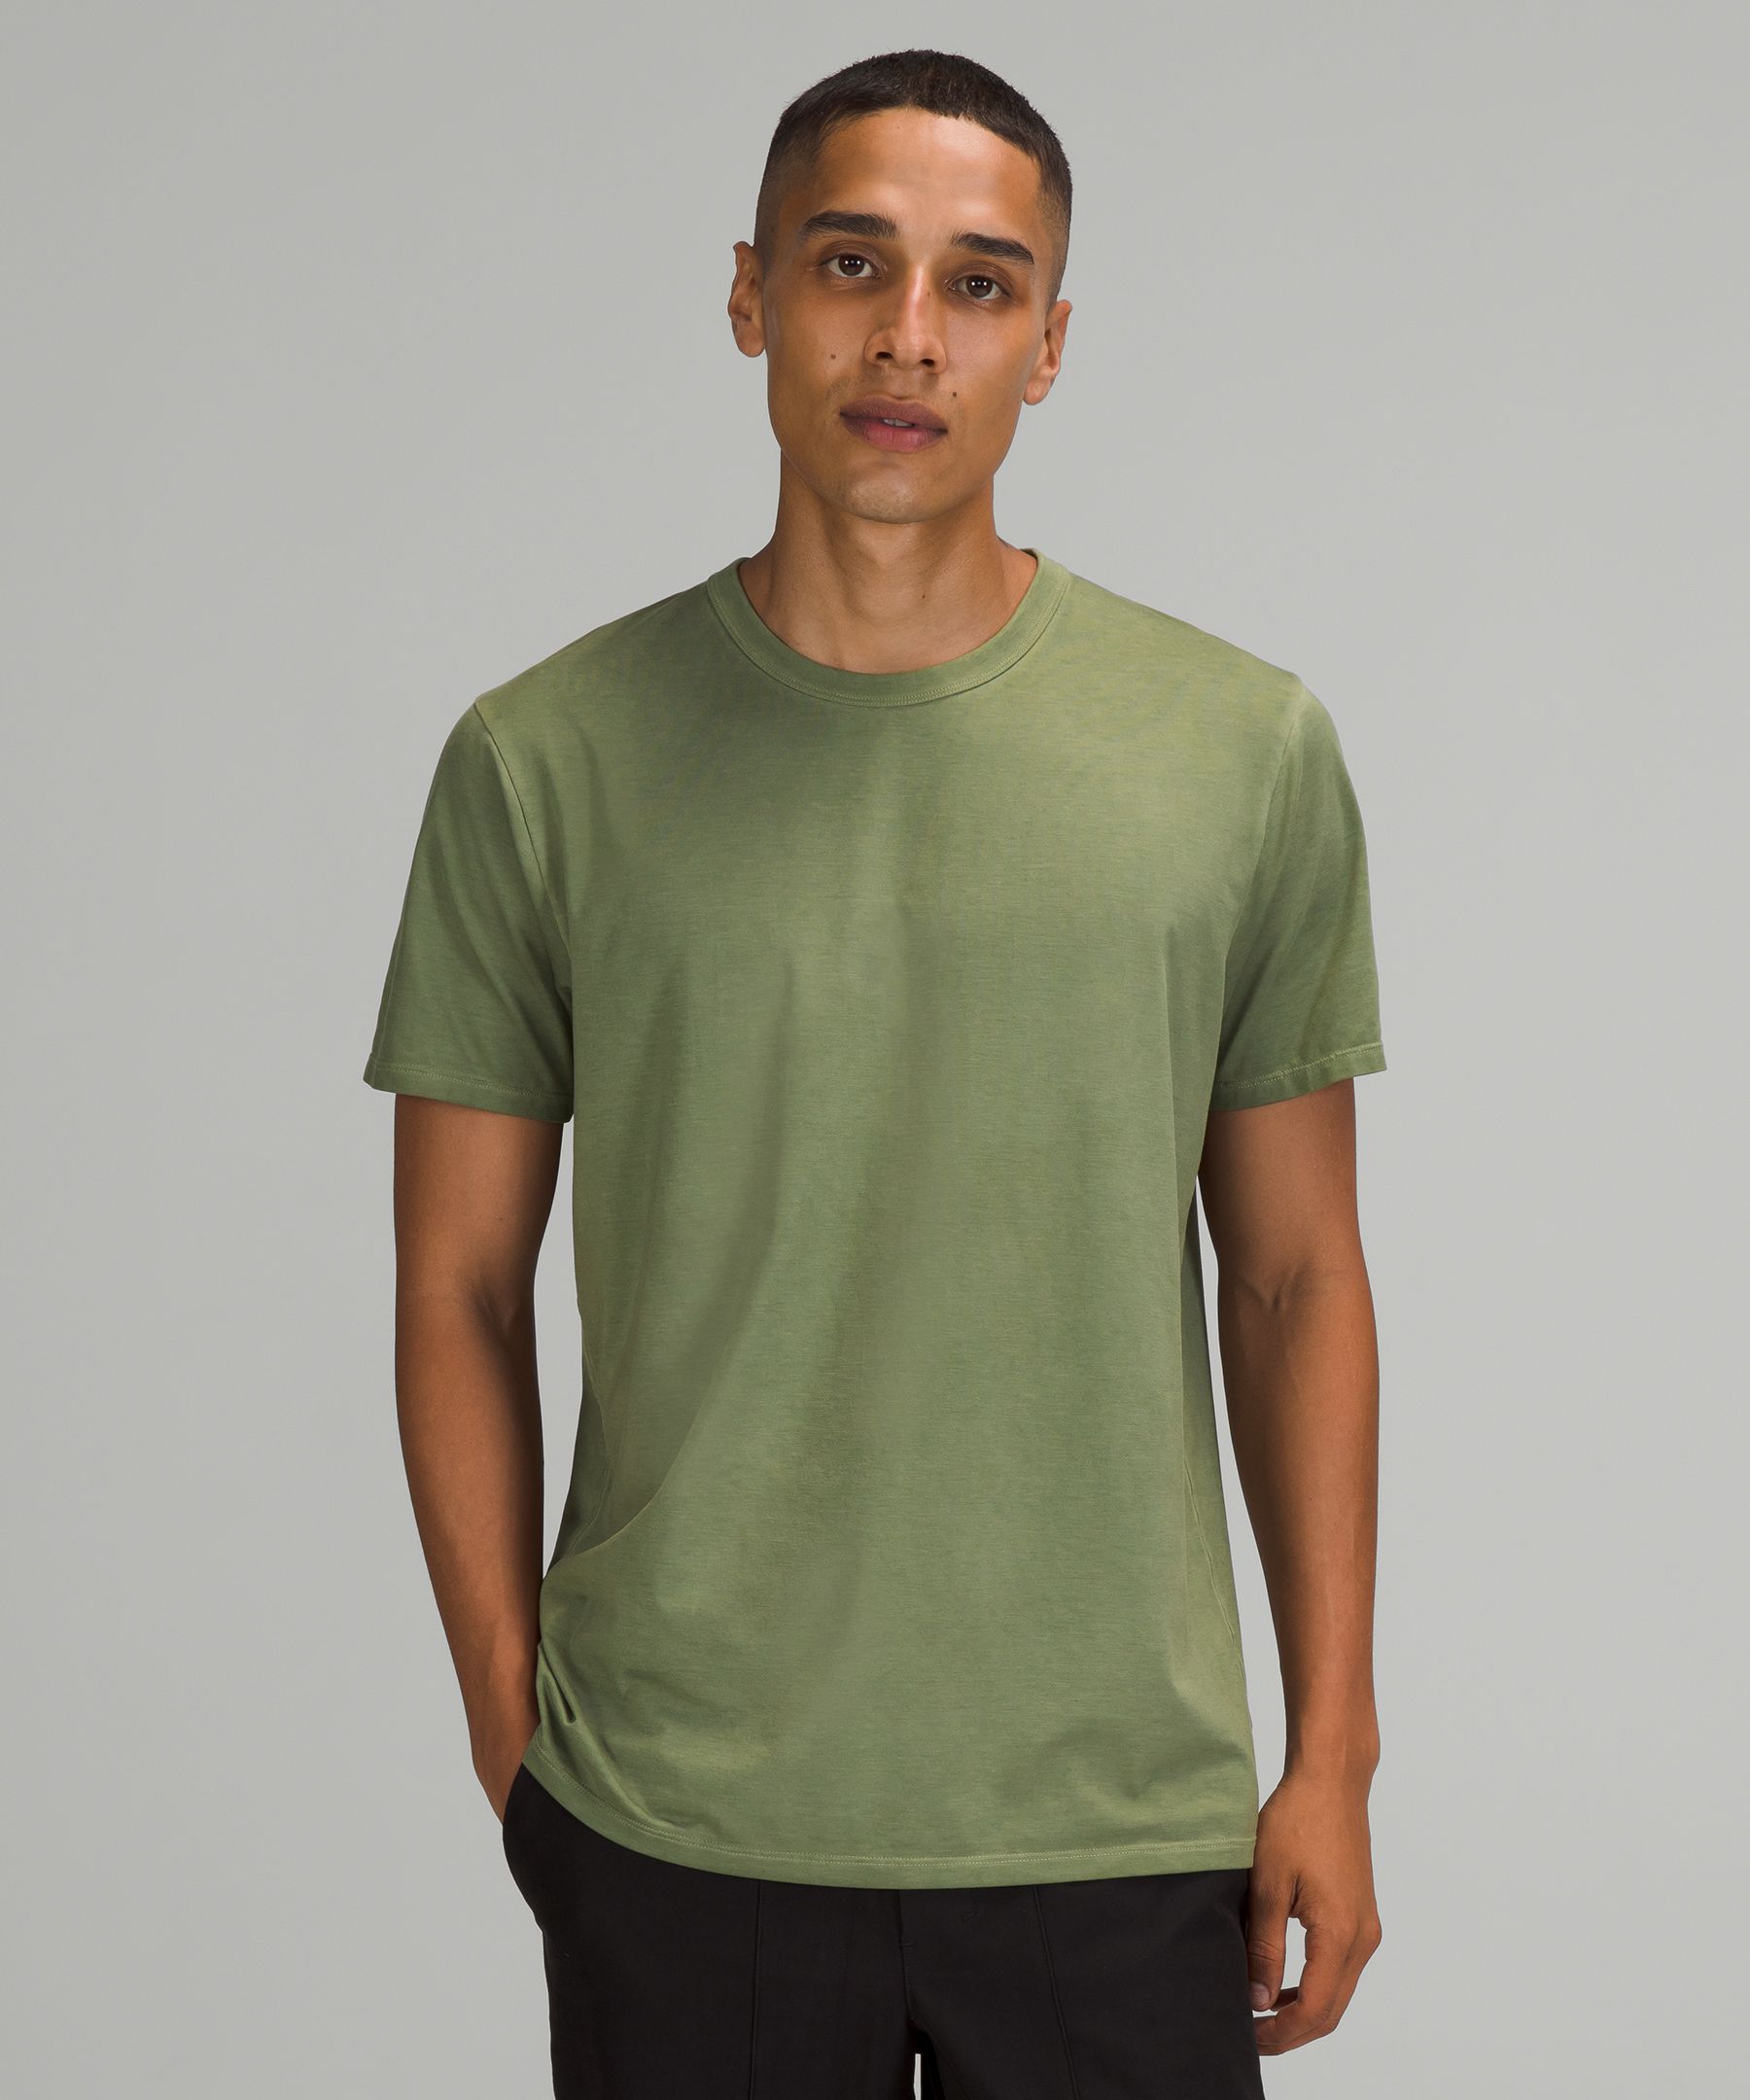 Lululemon The Fundamental T-shirt In Breeze Dye Green Twill